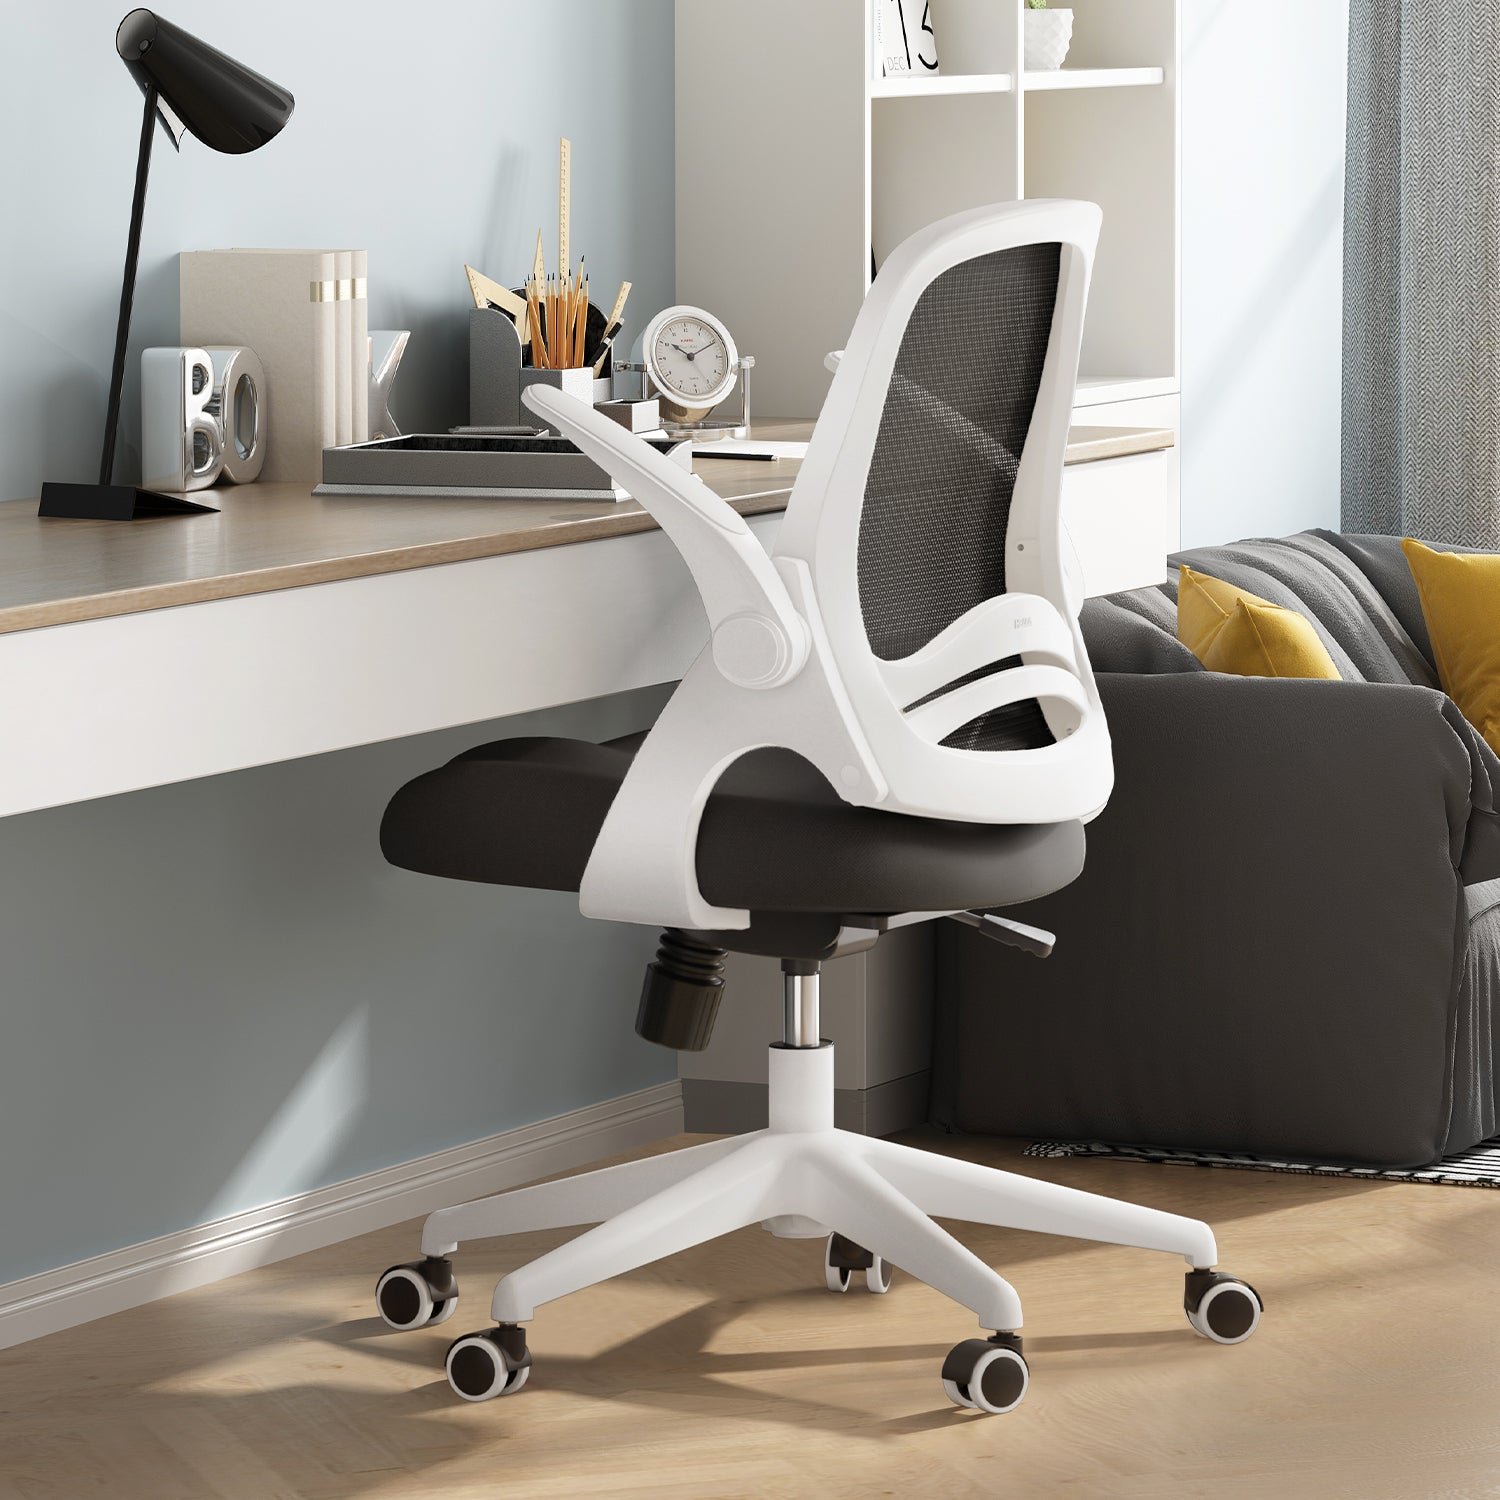 HBADA Penguin-inspired Office Chair--White